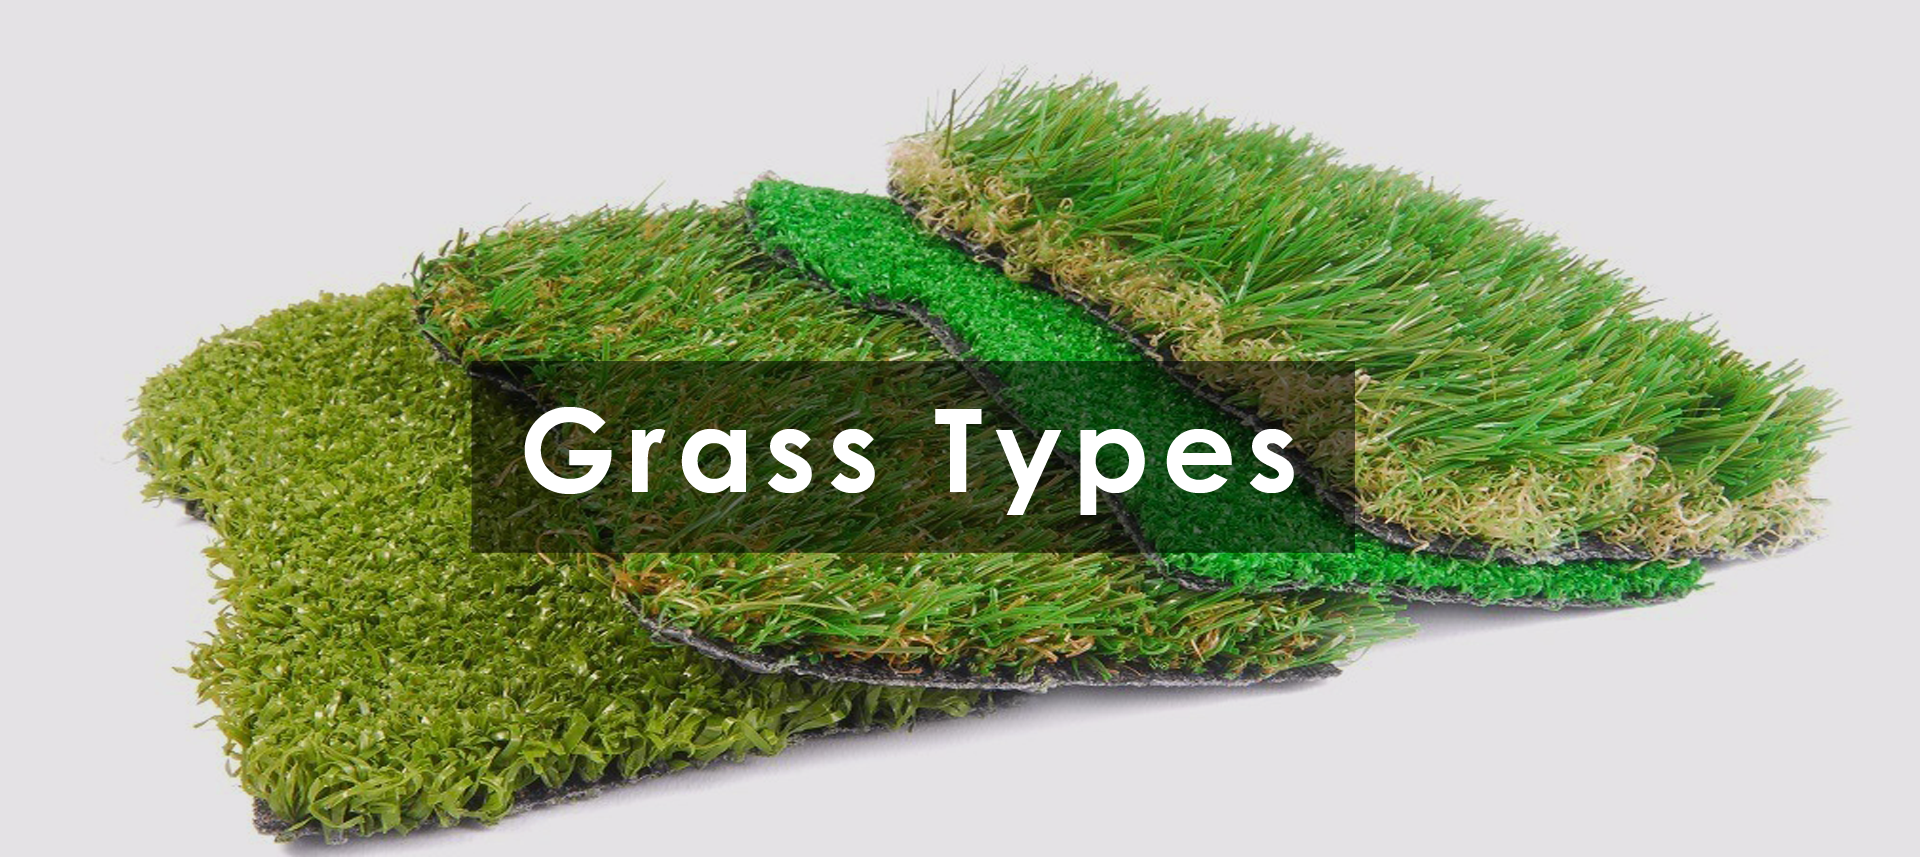 Grass Types. 